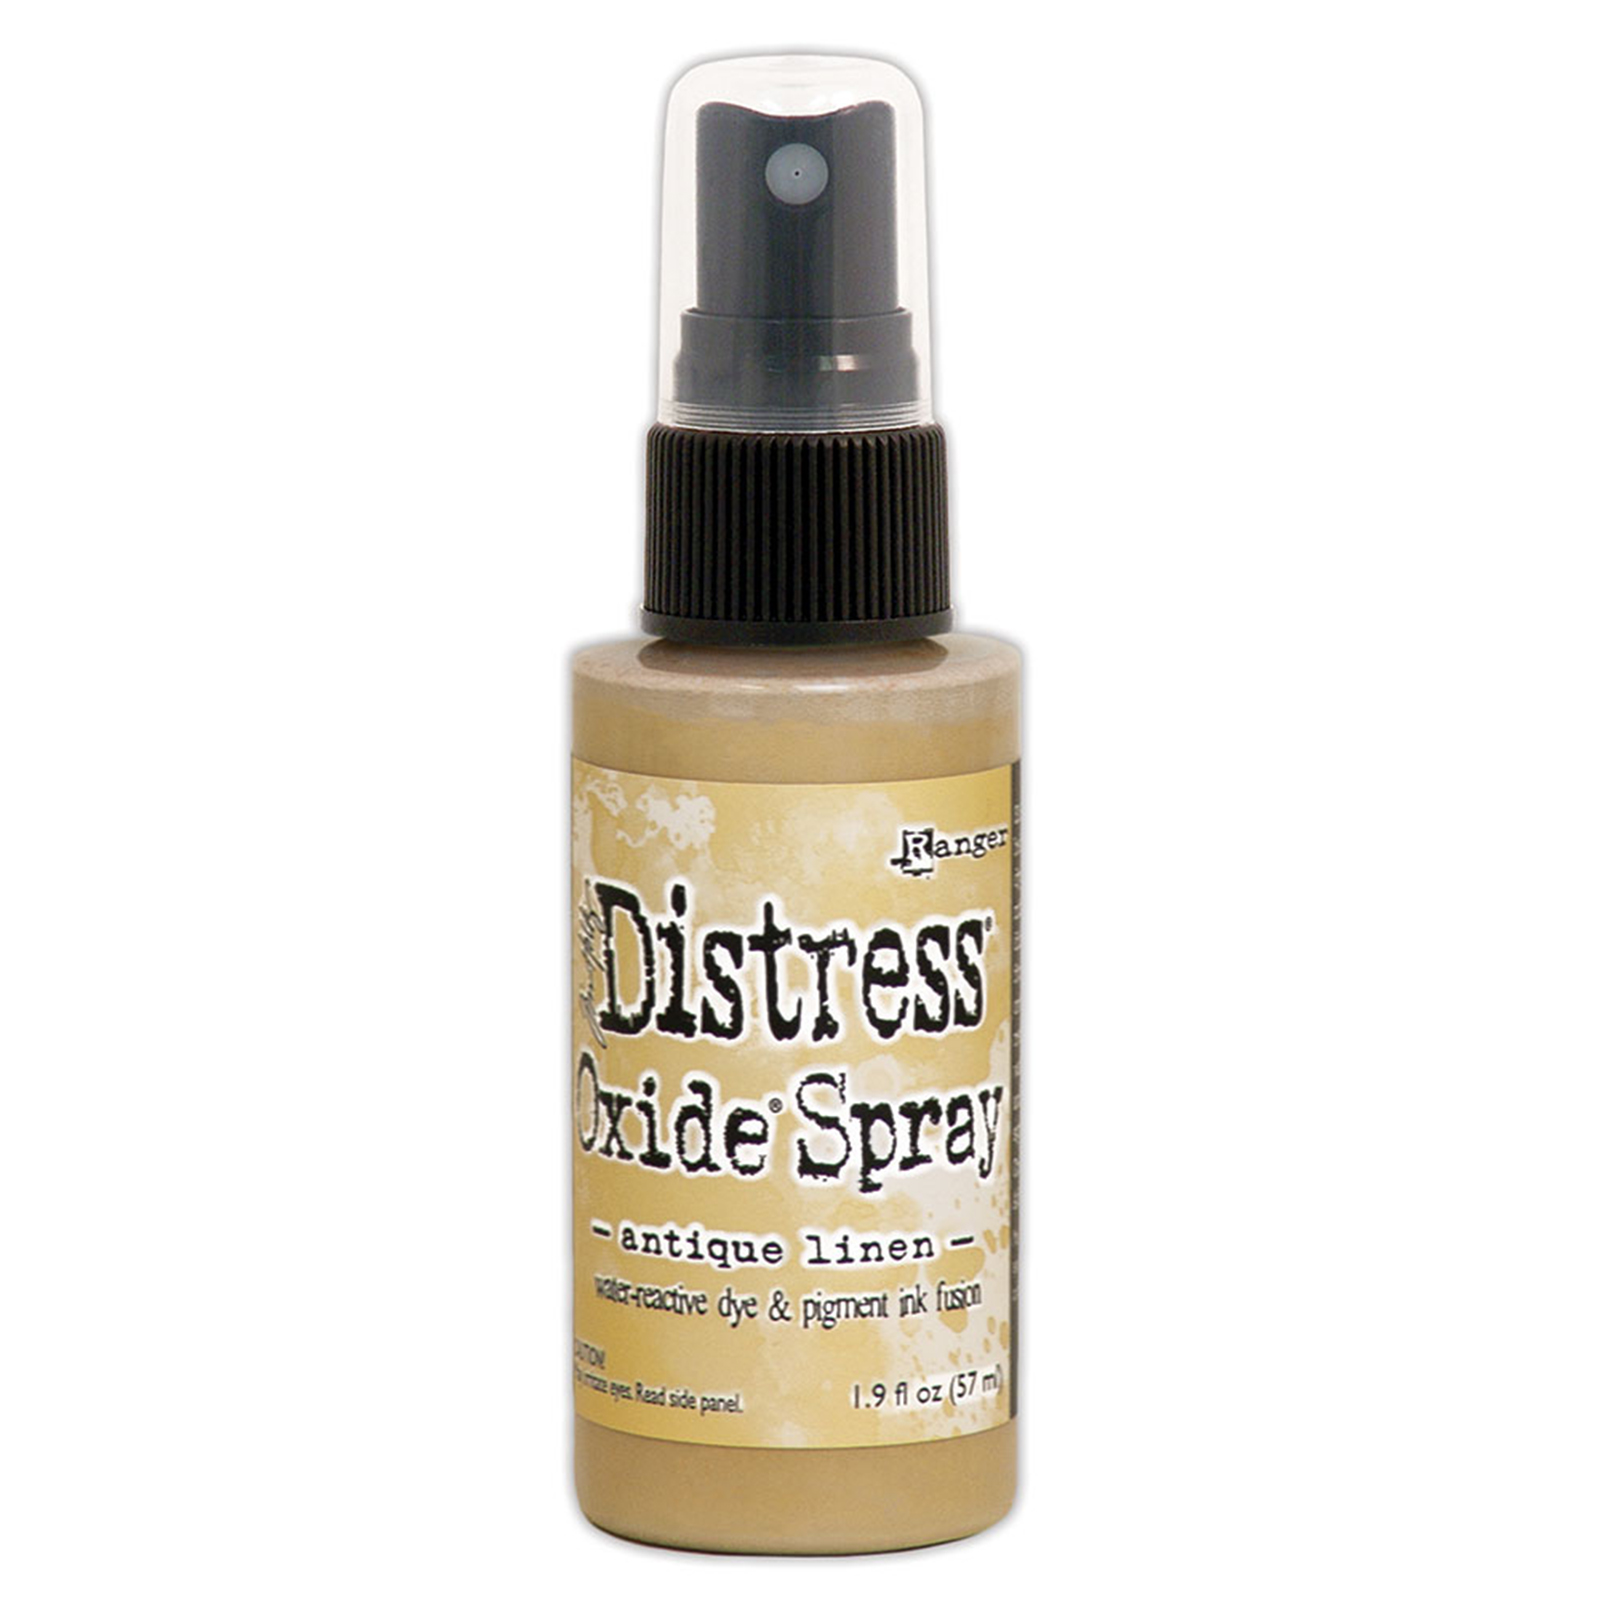 Ranger • Distress oxide spray Antique linen